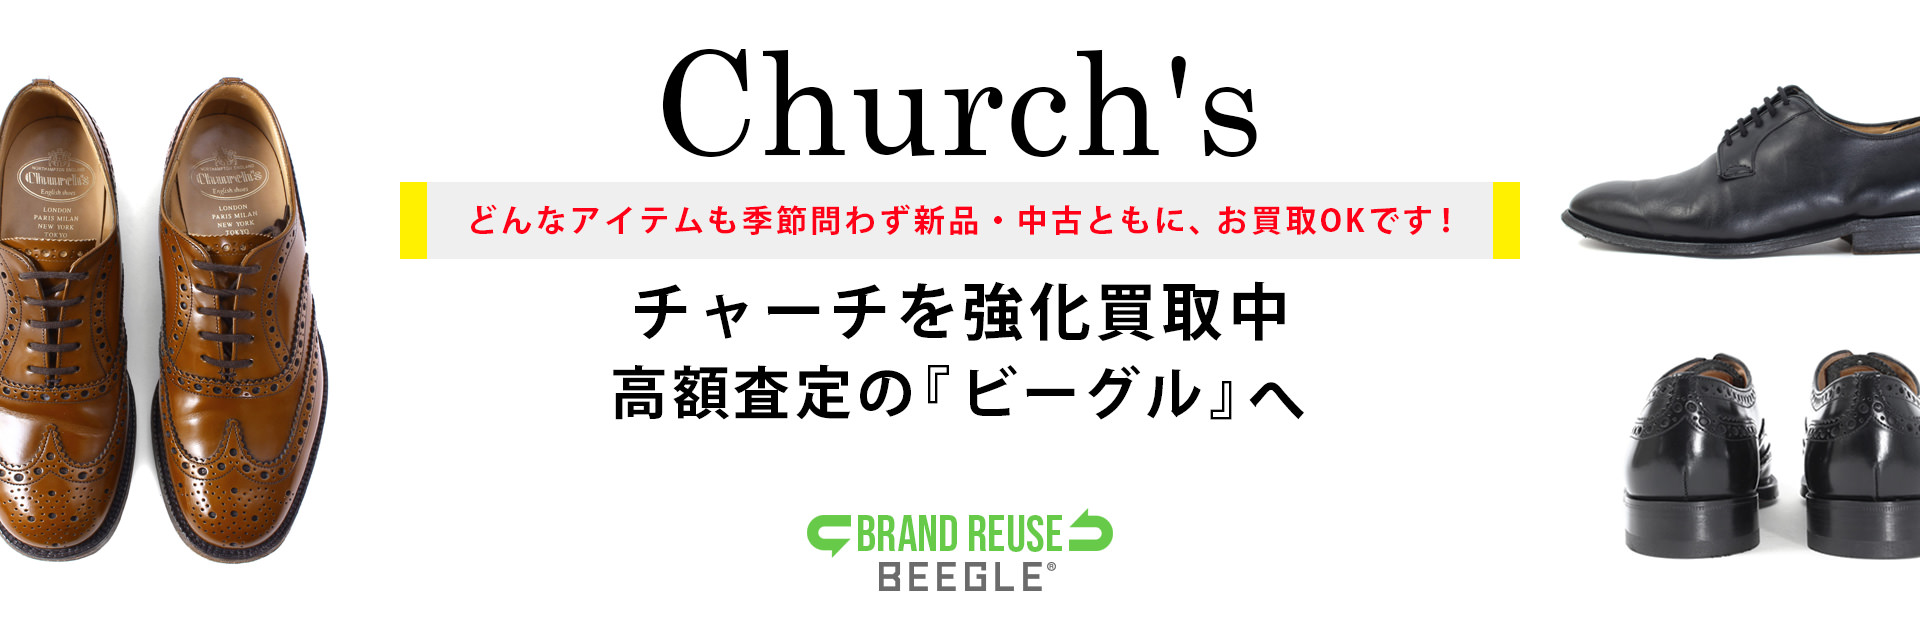 Church’s